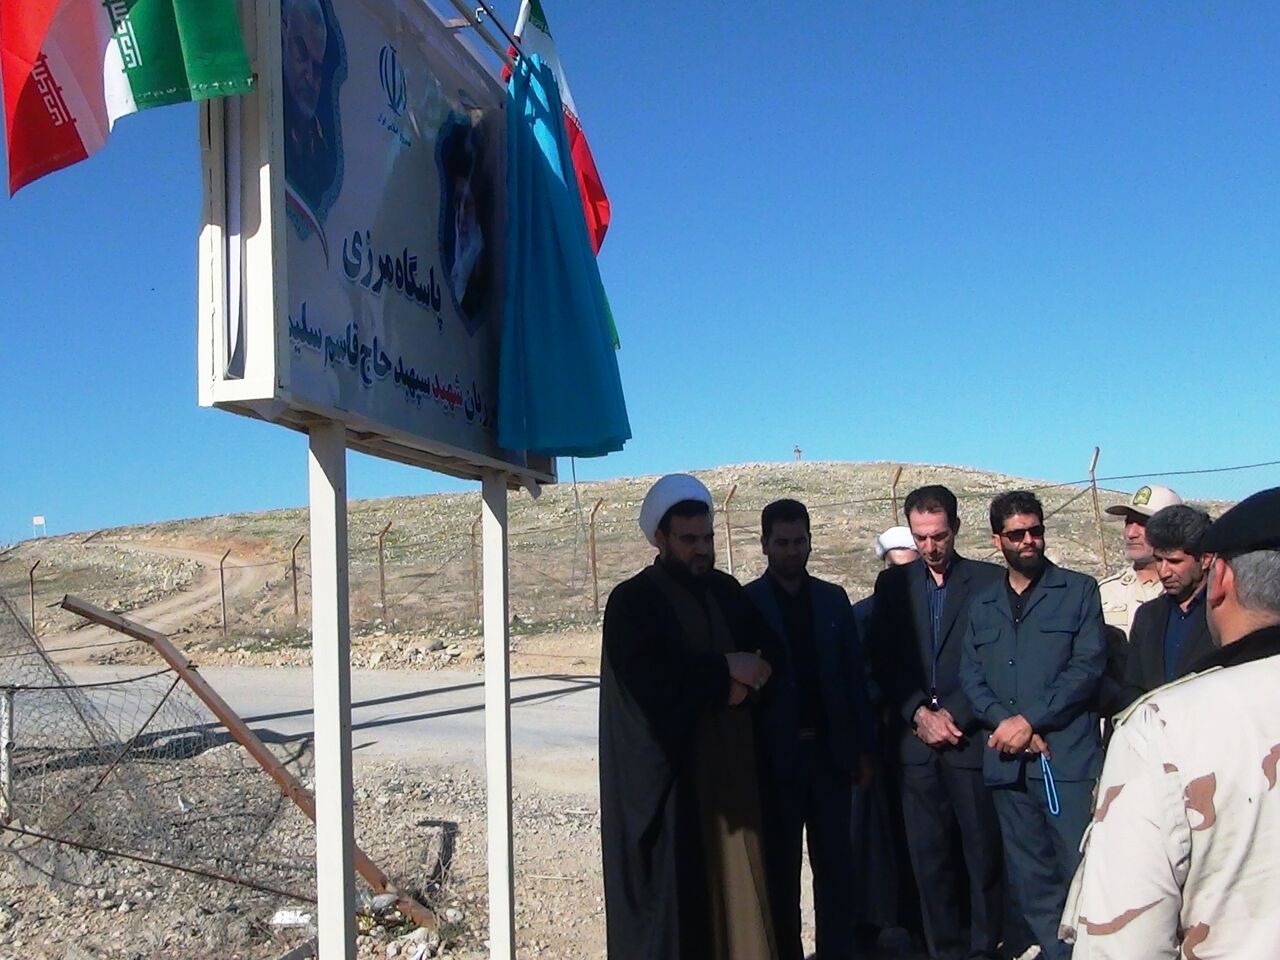 پاسگاه مرزی میان تنگ سومار به نام شهید سلیمانی نامگذاری شد - ایرنا